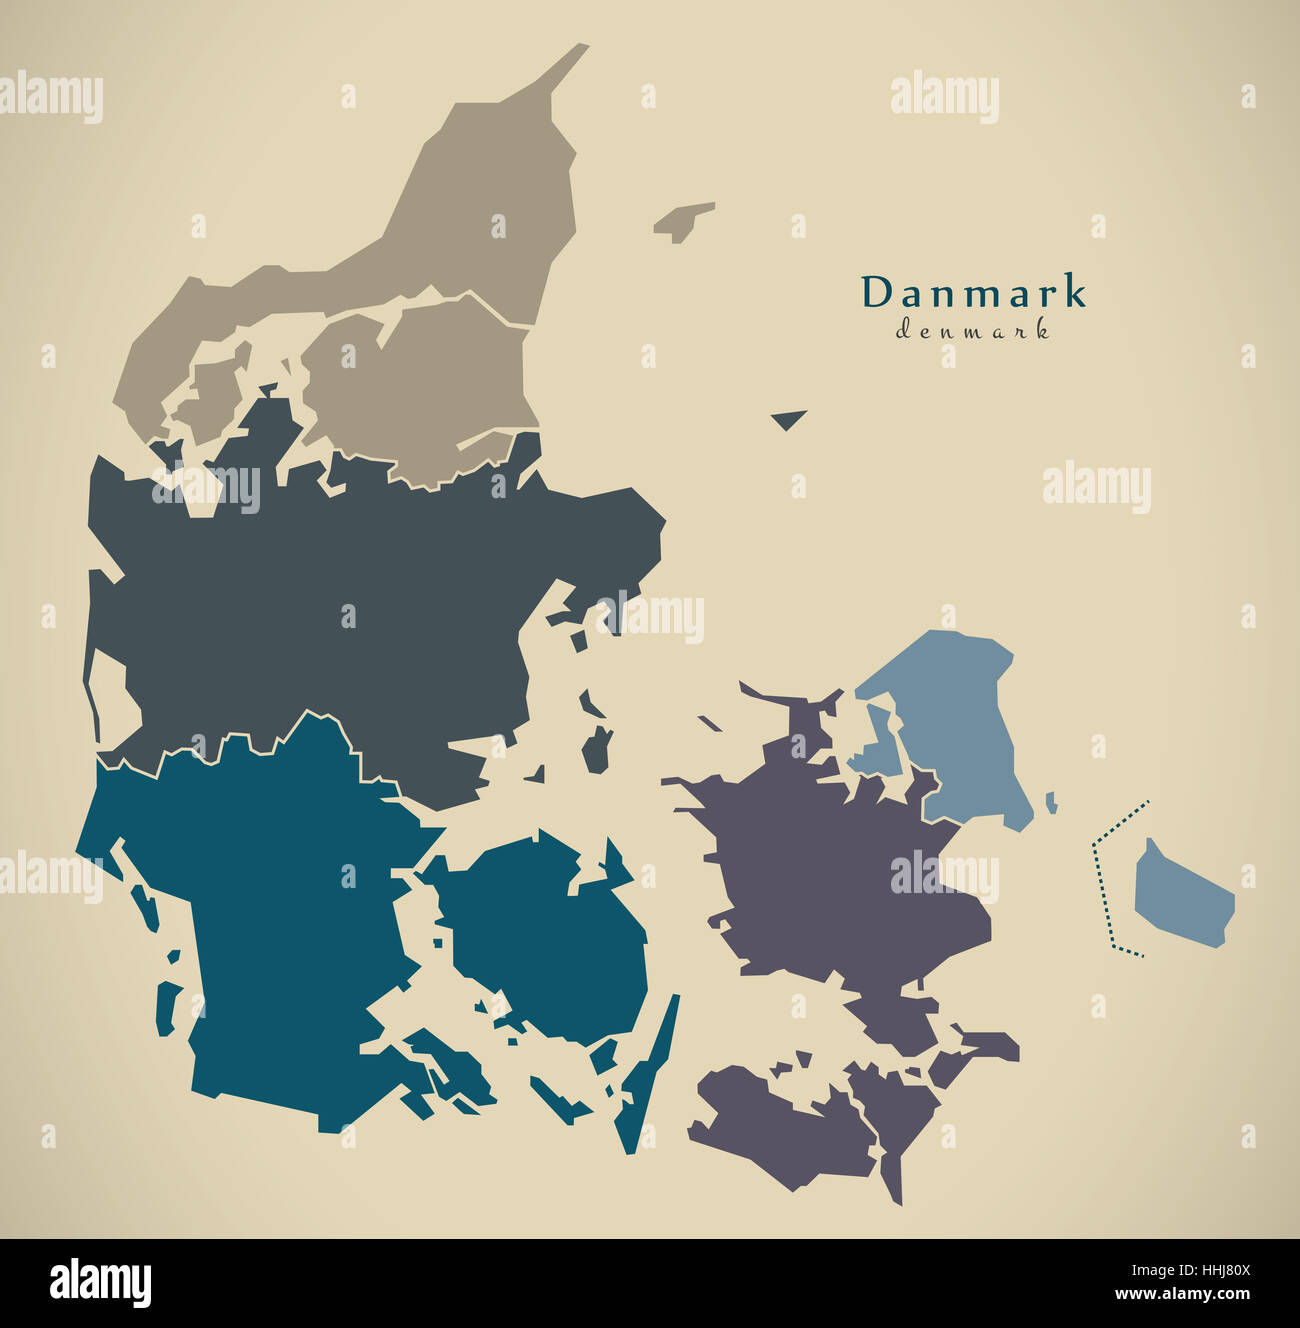 Mappa moderno - Danimarca con regioni DK illustrazione Foto Stock